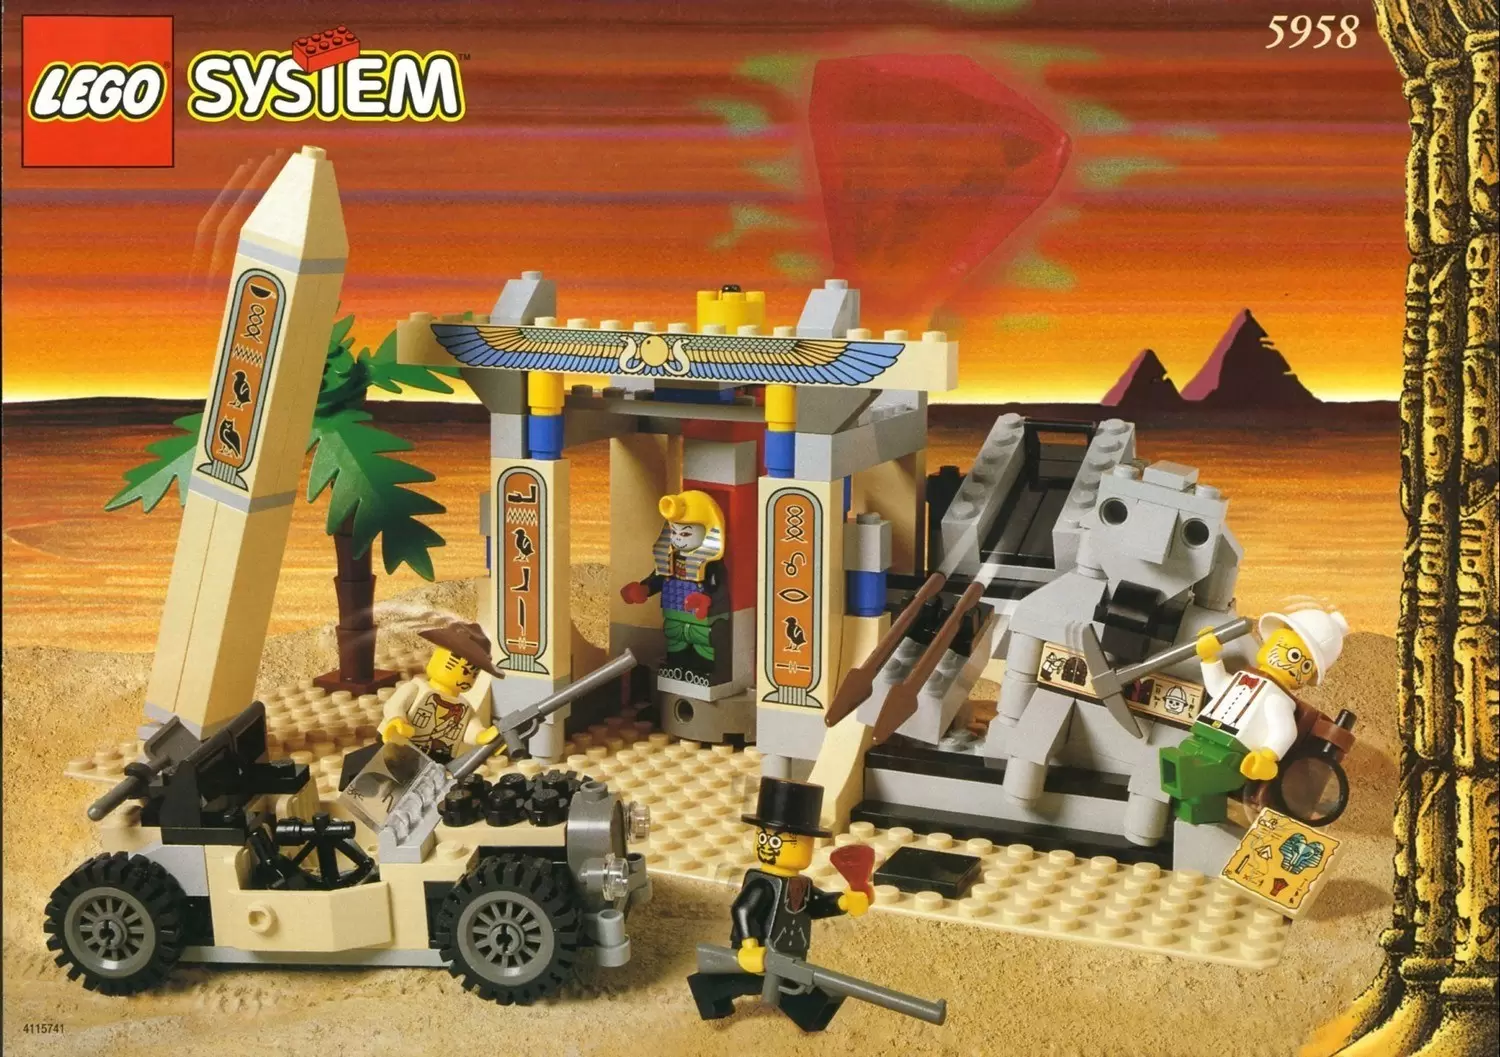 styrte Problem Duke Mummy's Tomb - LEGO Adventurers set 5958